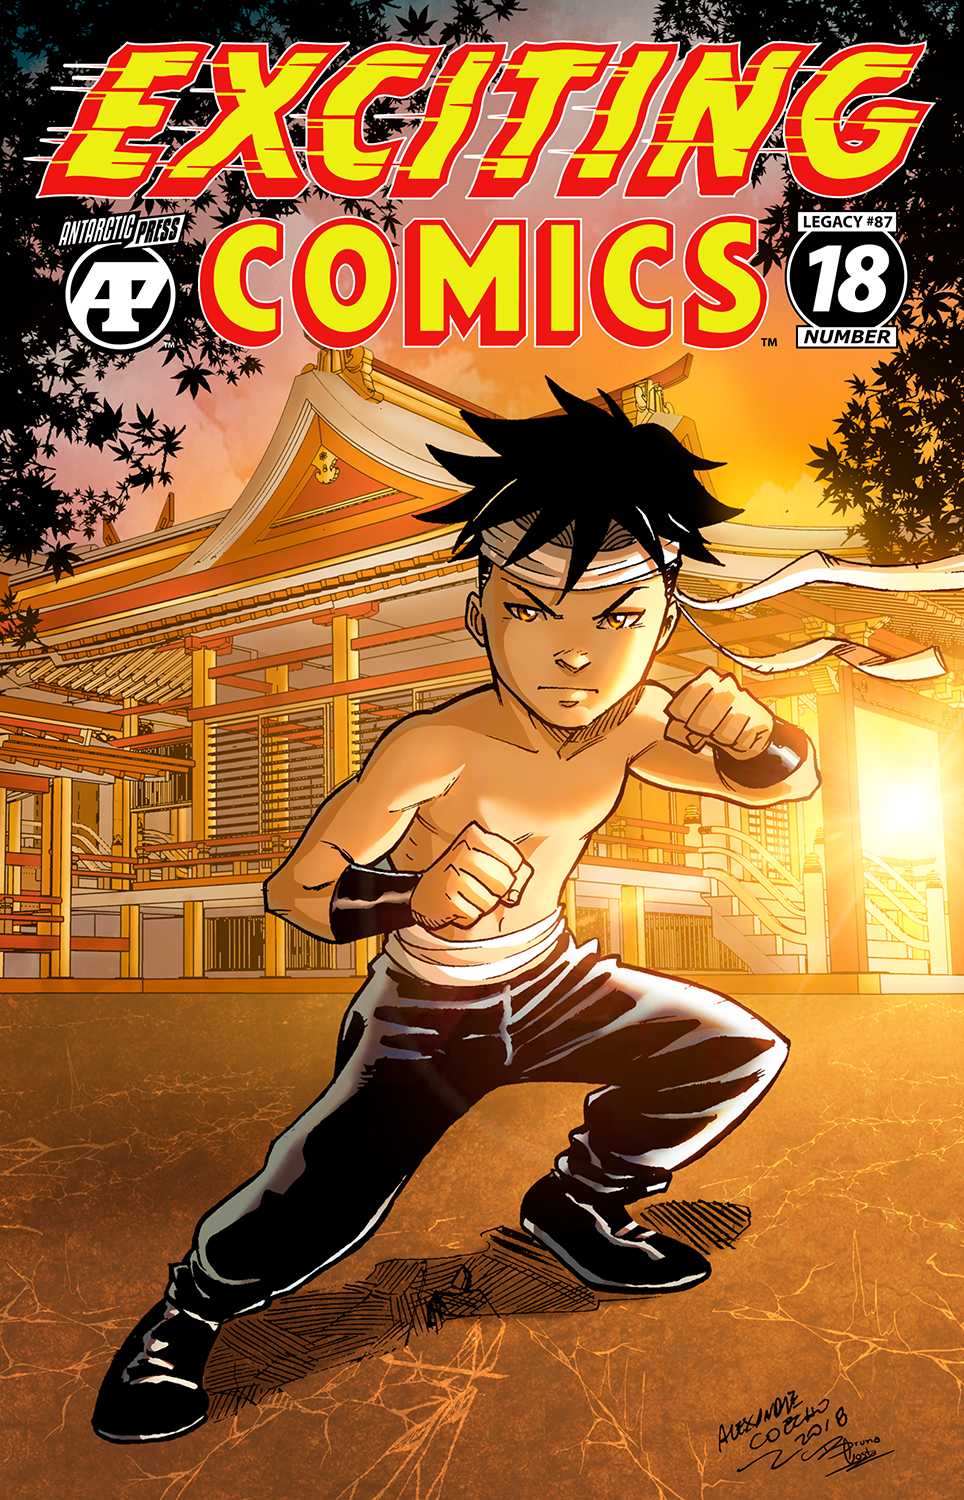 Comics18